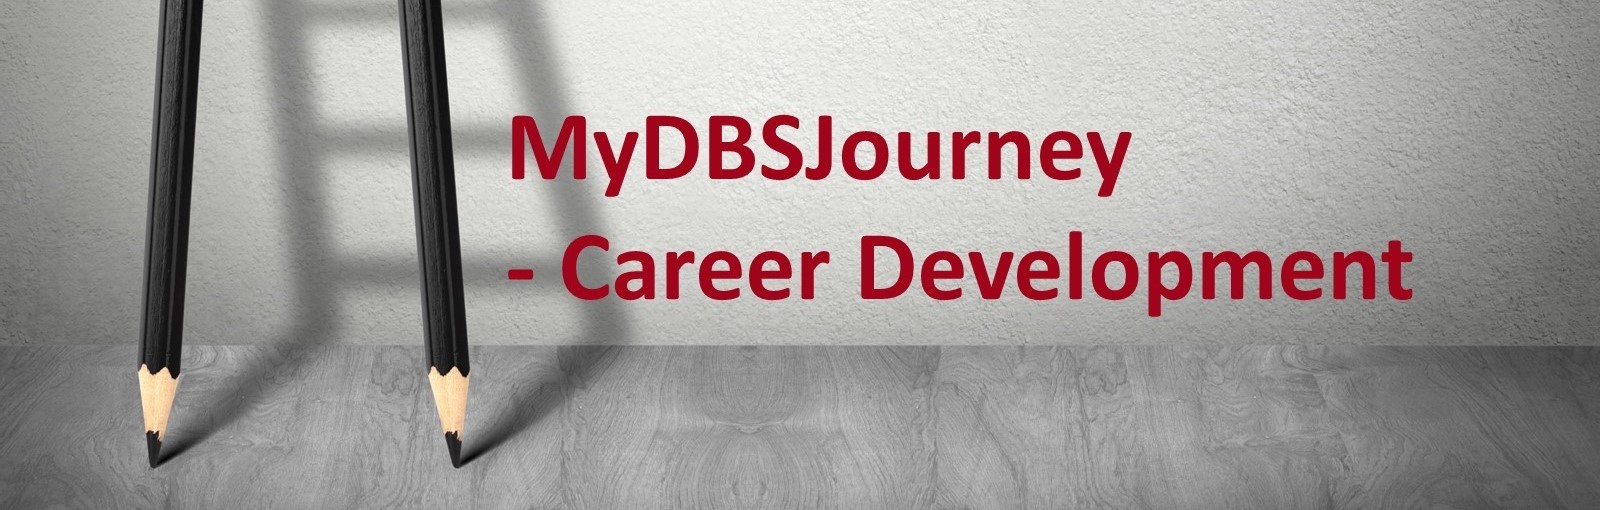 MyDBSJournet - Career Development